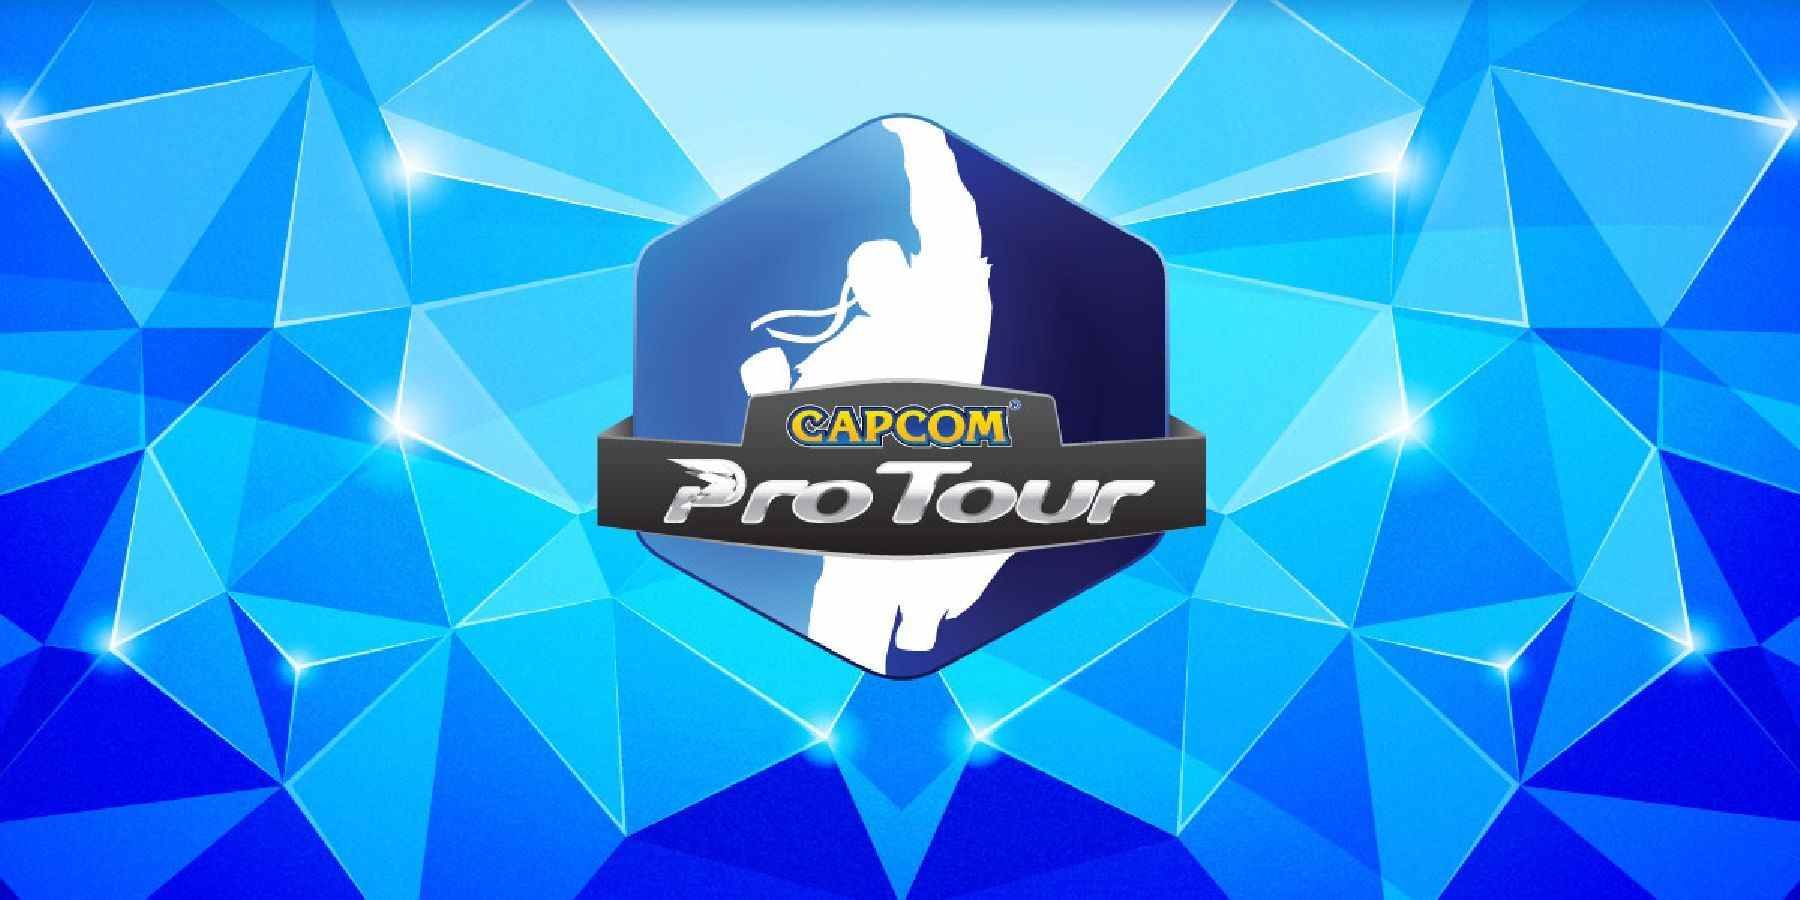 capcom pro tour promotional image